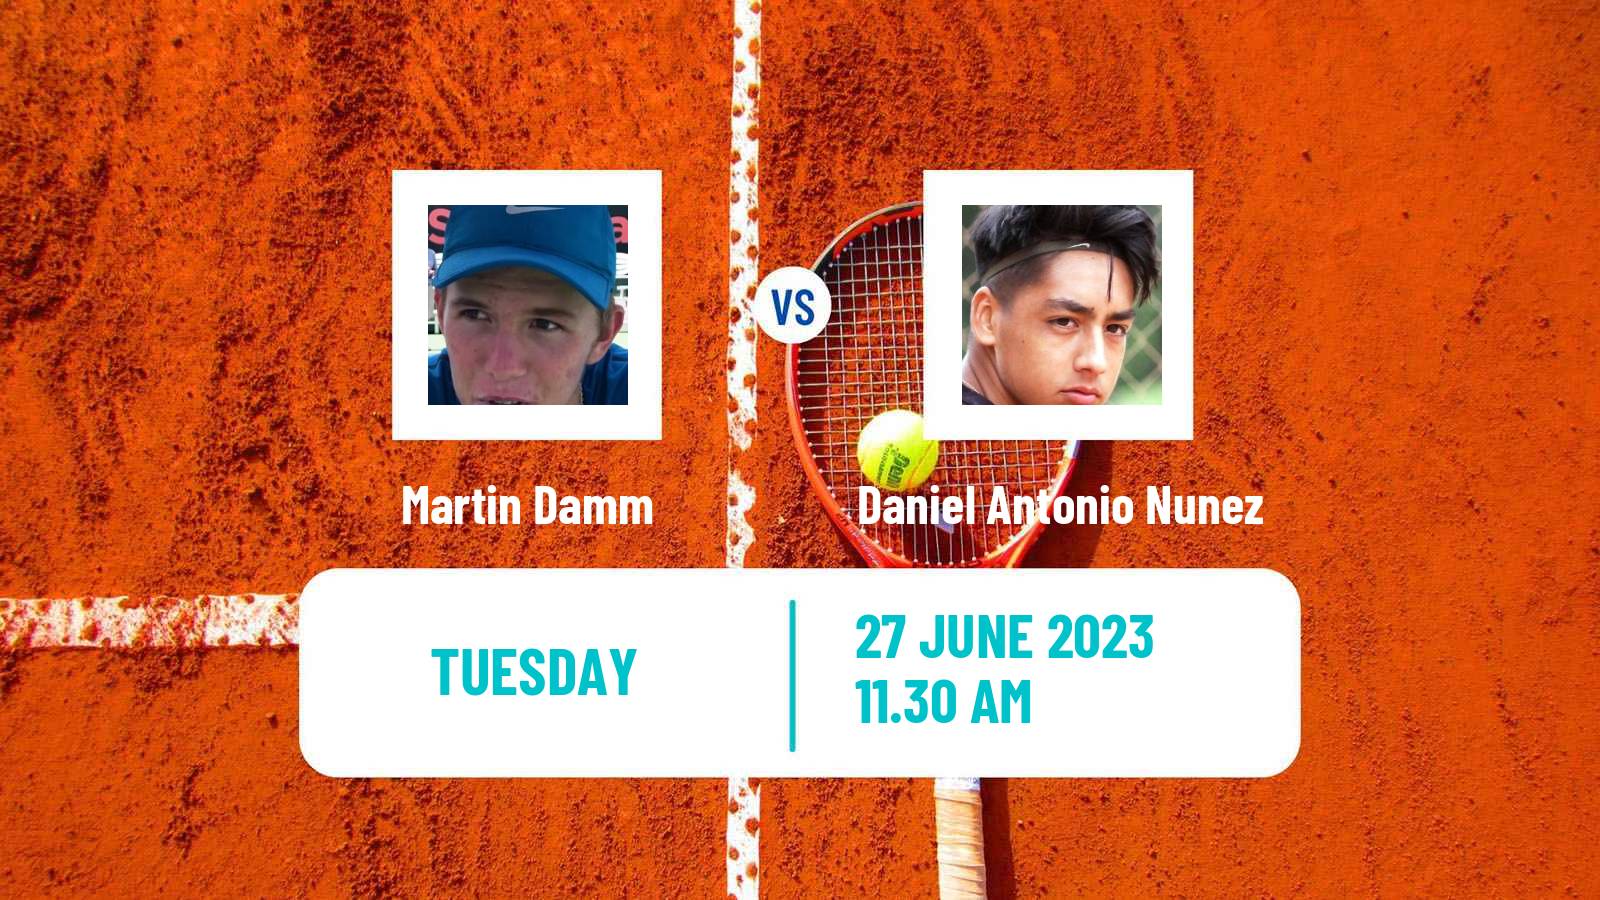 Tennis ITF M25 Santo Domingo 3 Men Martin Damm - Daniel Antonio Nunez